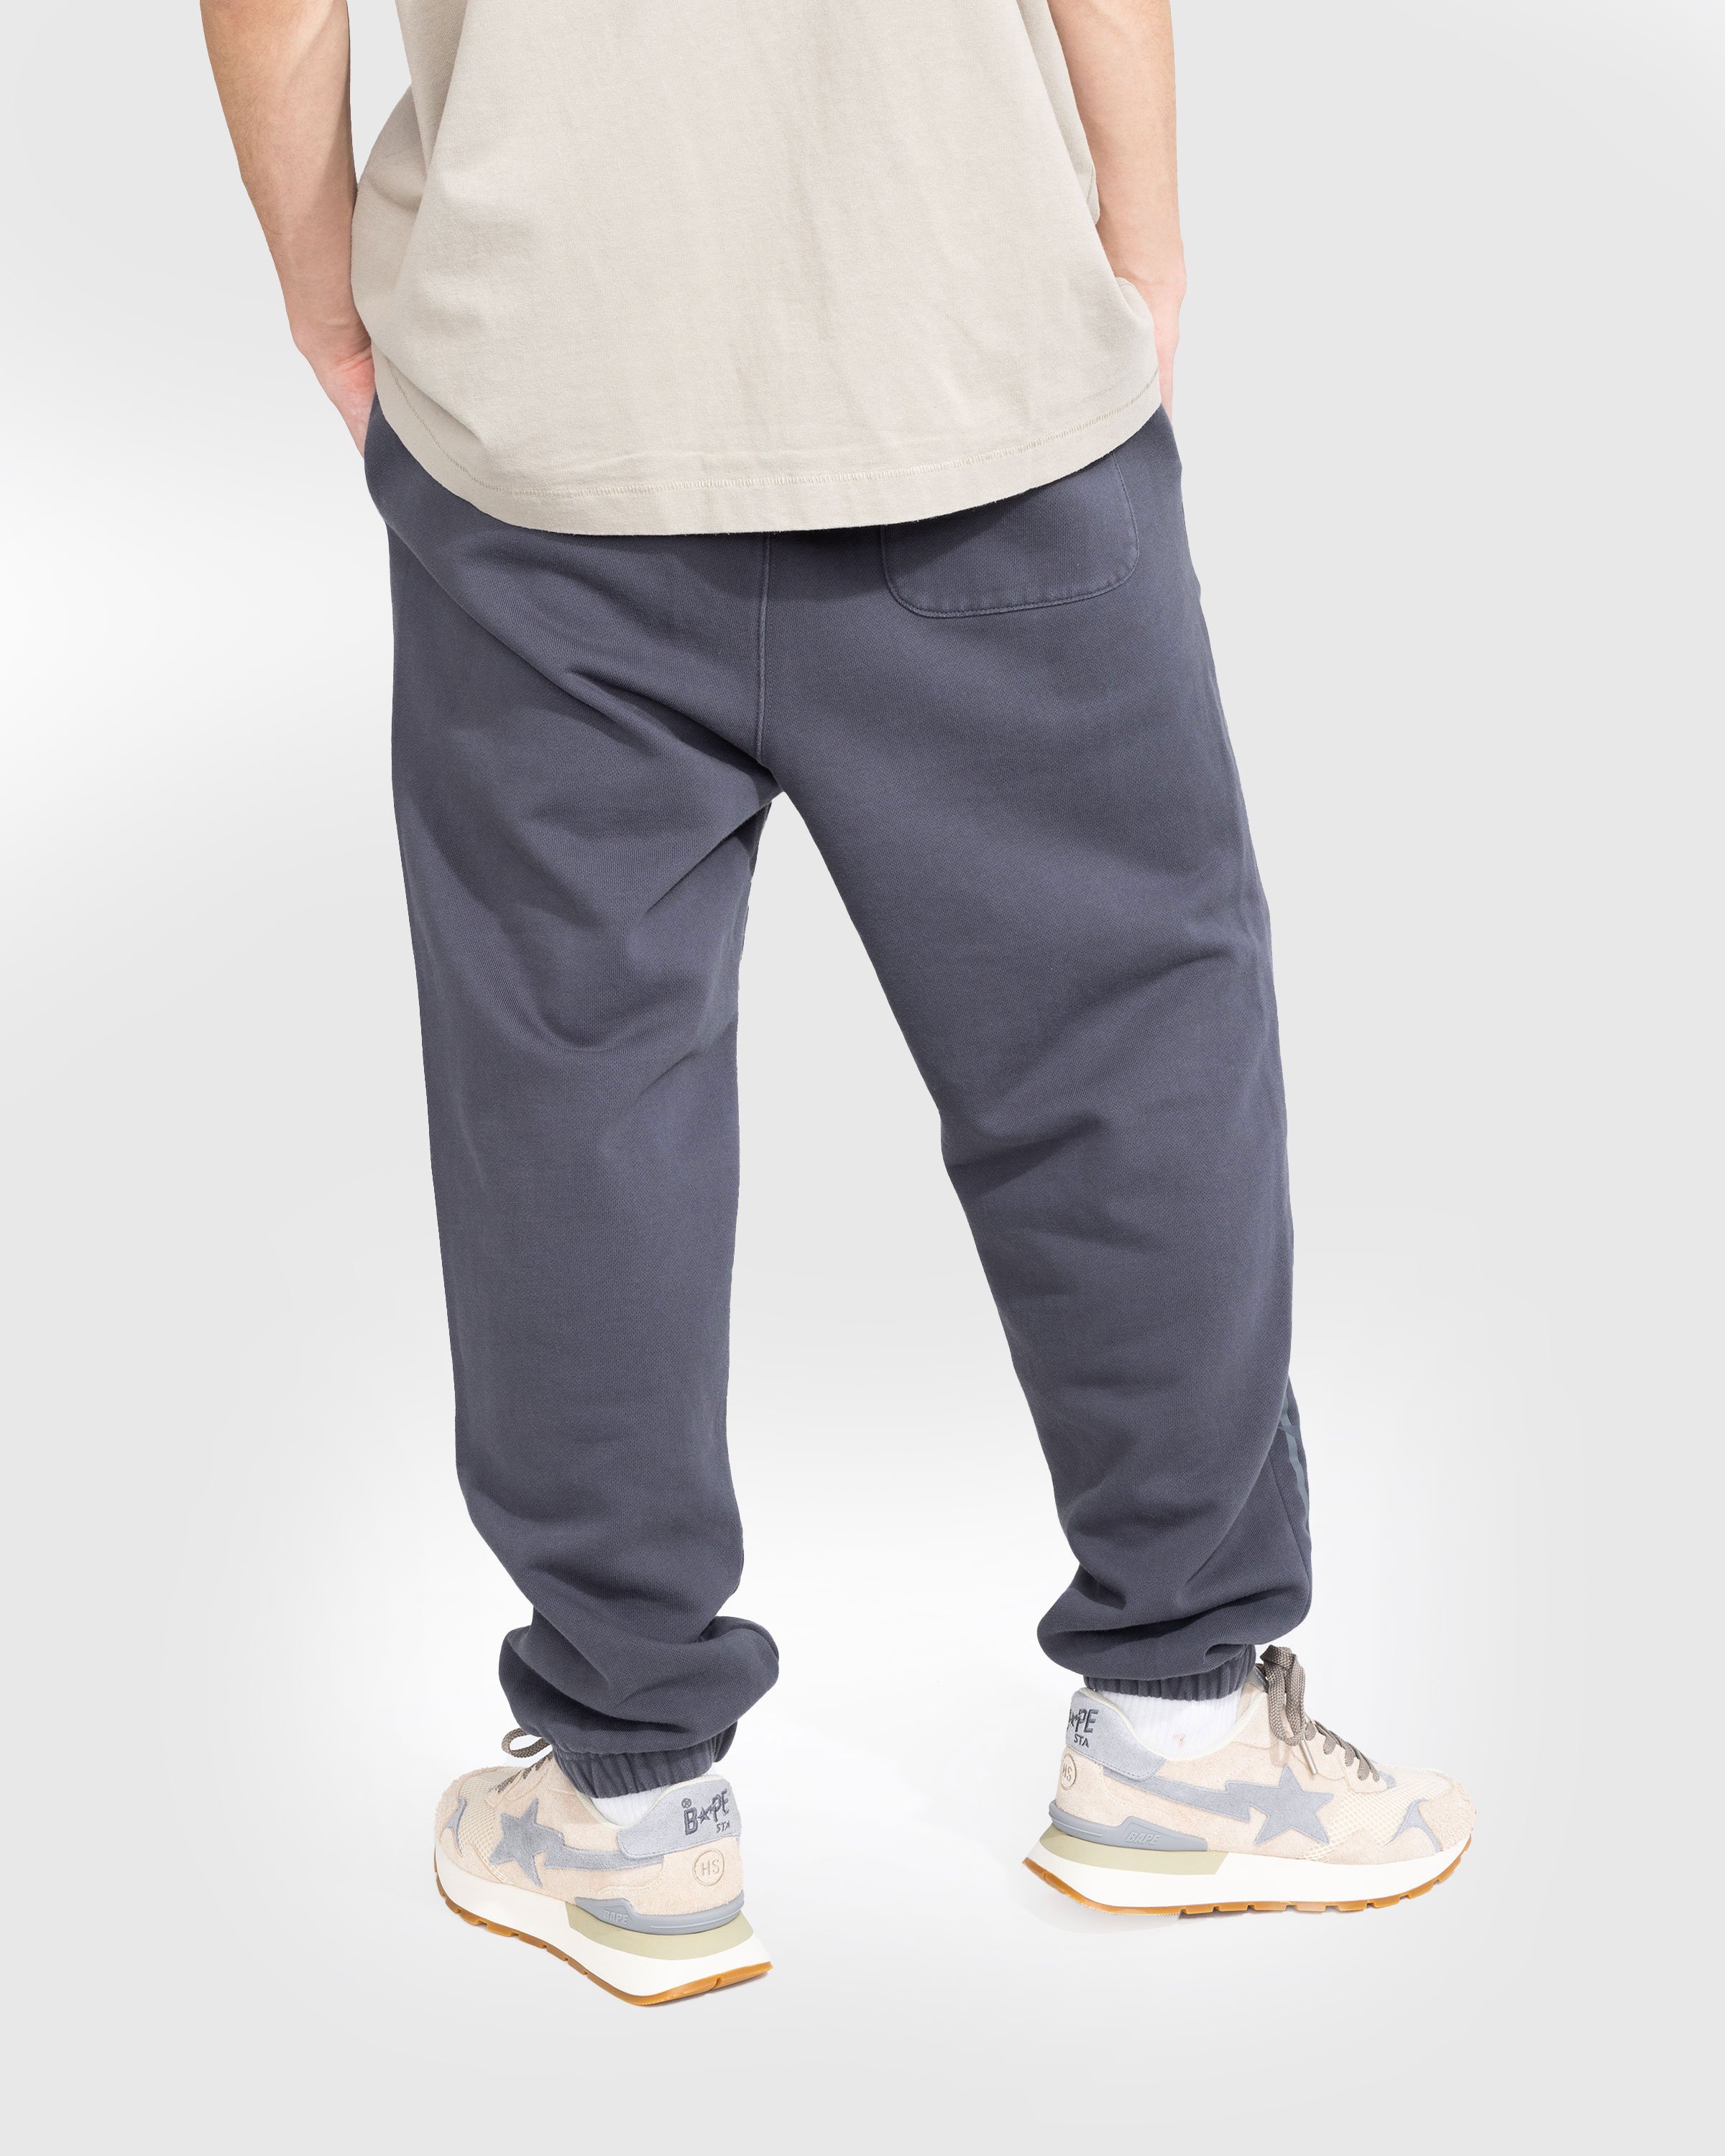 BAPE x Highsnobiety - Heavy Washed Sweat Pants Charcoal - Clothing - Grey - Image 4